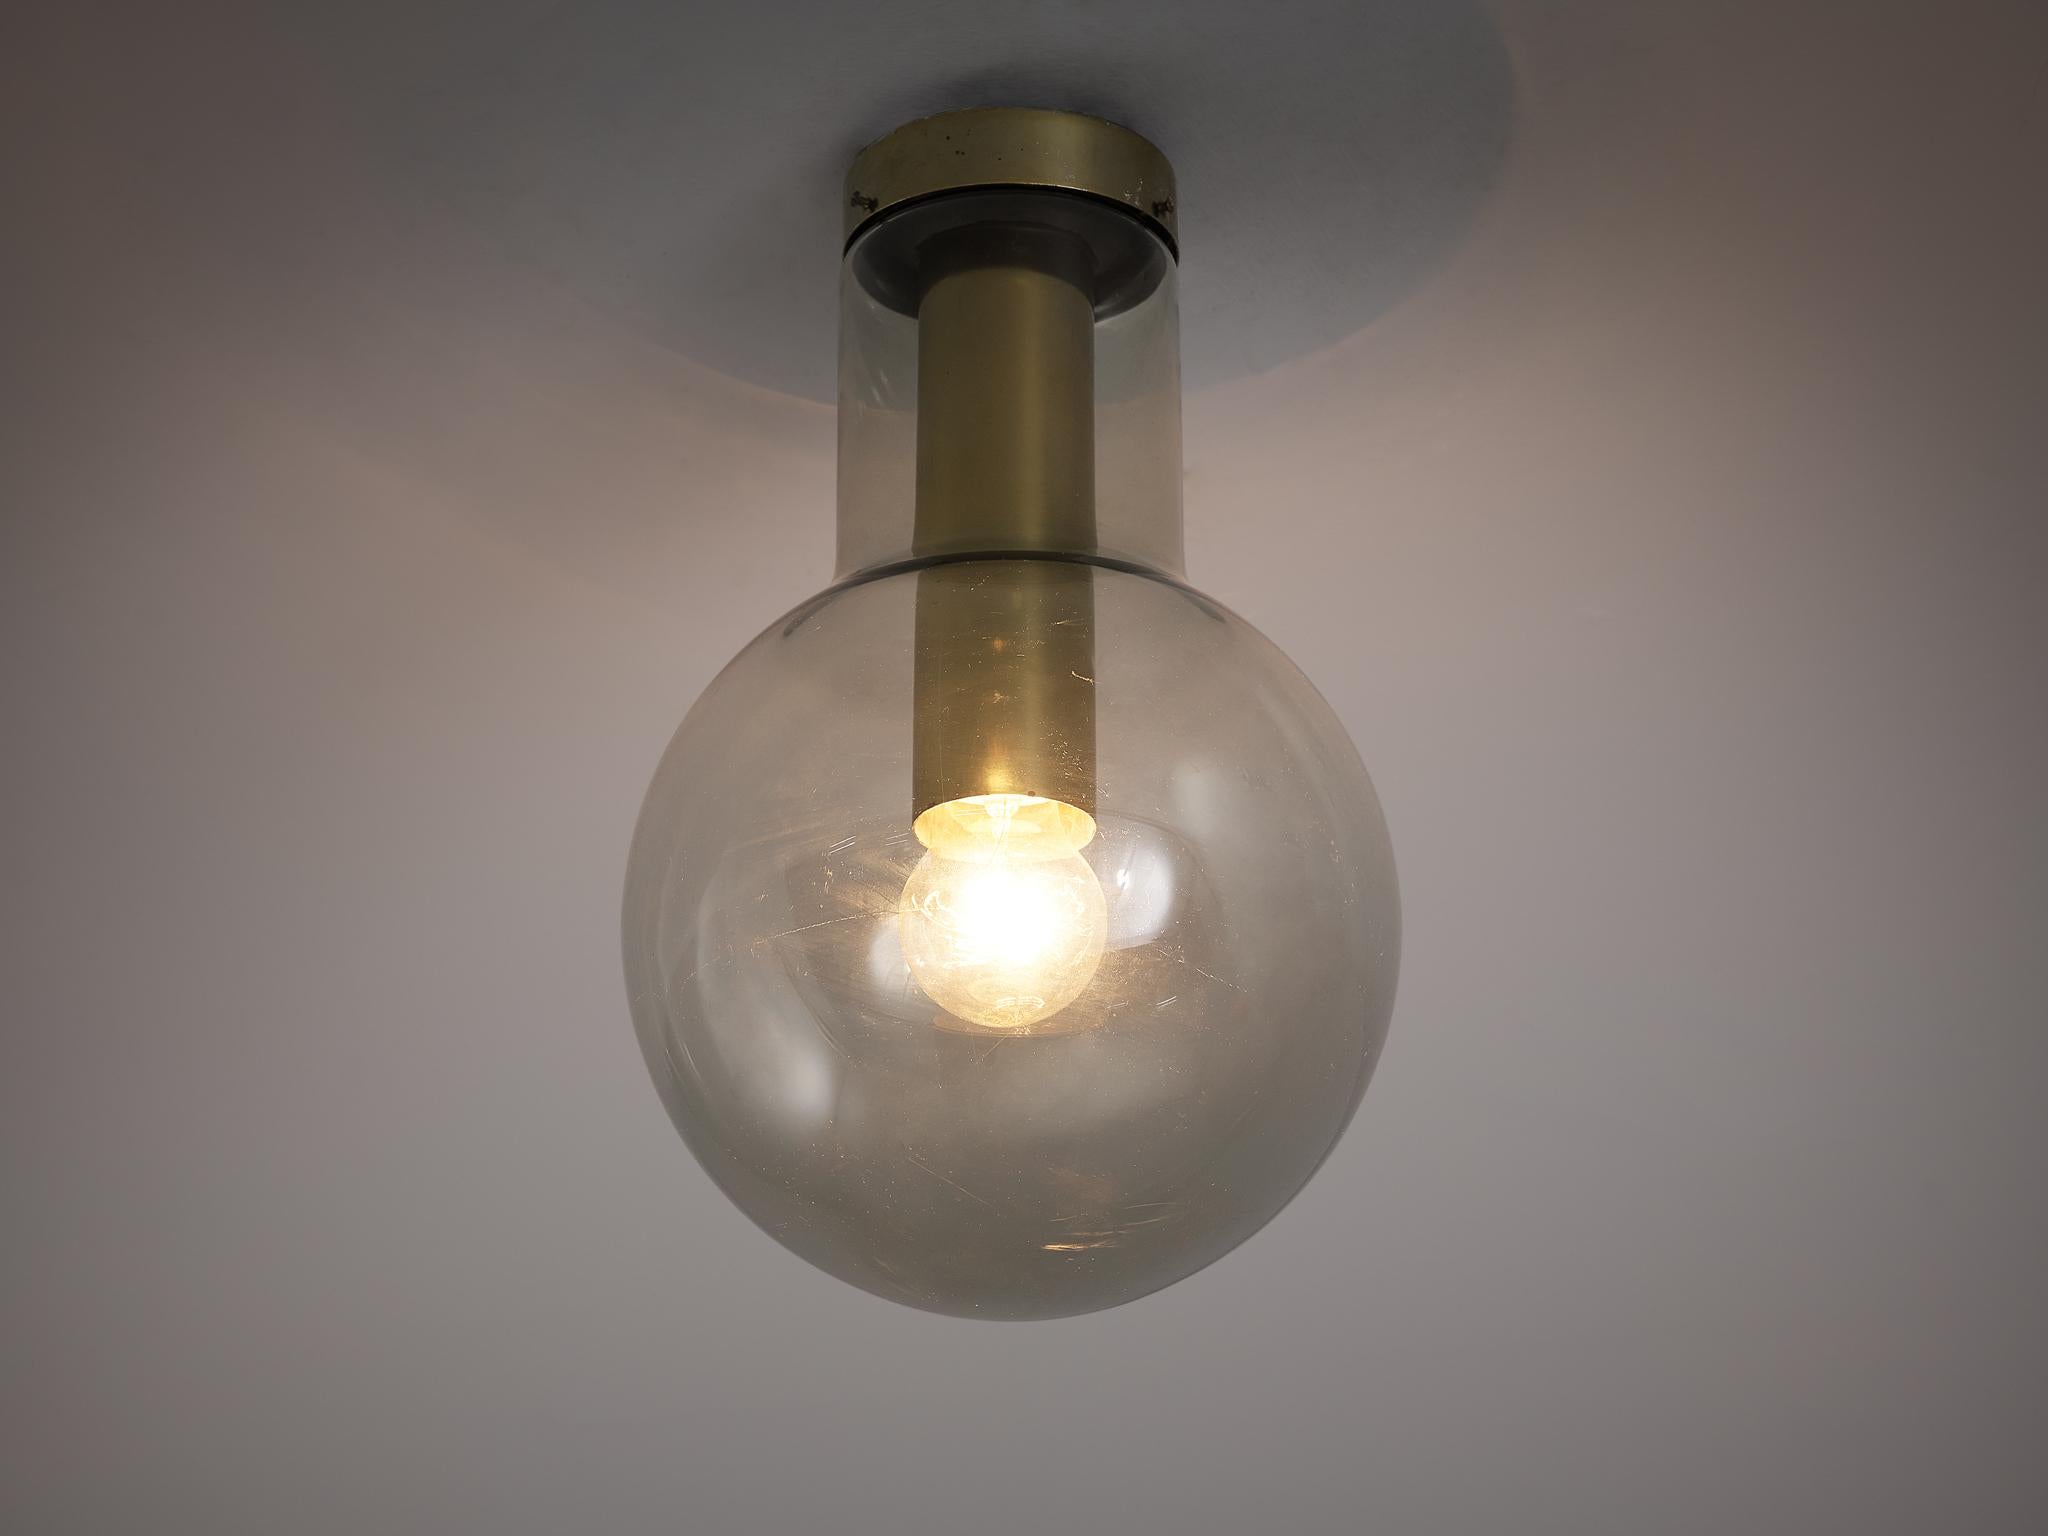 RAAK Amsterdam, Deckenleuchte Modell 'Maxi-Light Bulb' B-1260, Messing, Rauchglas, Niederlande, 1960er Jahre.

RAAK hat eine amüsante Lampe geschaffen, indem er eine Glühbirne um eine Glühbirne herum gebaut hat. Ein einzigartiges Design entsteht